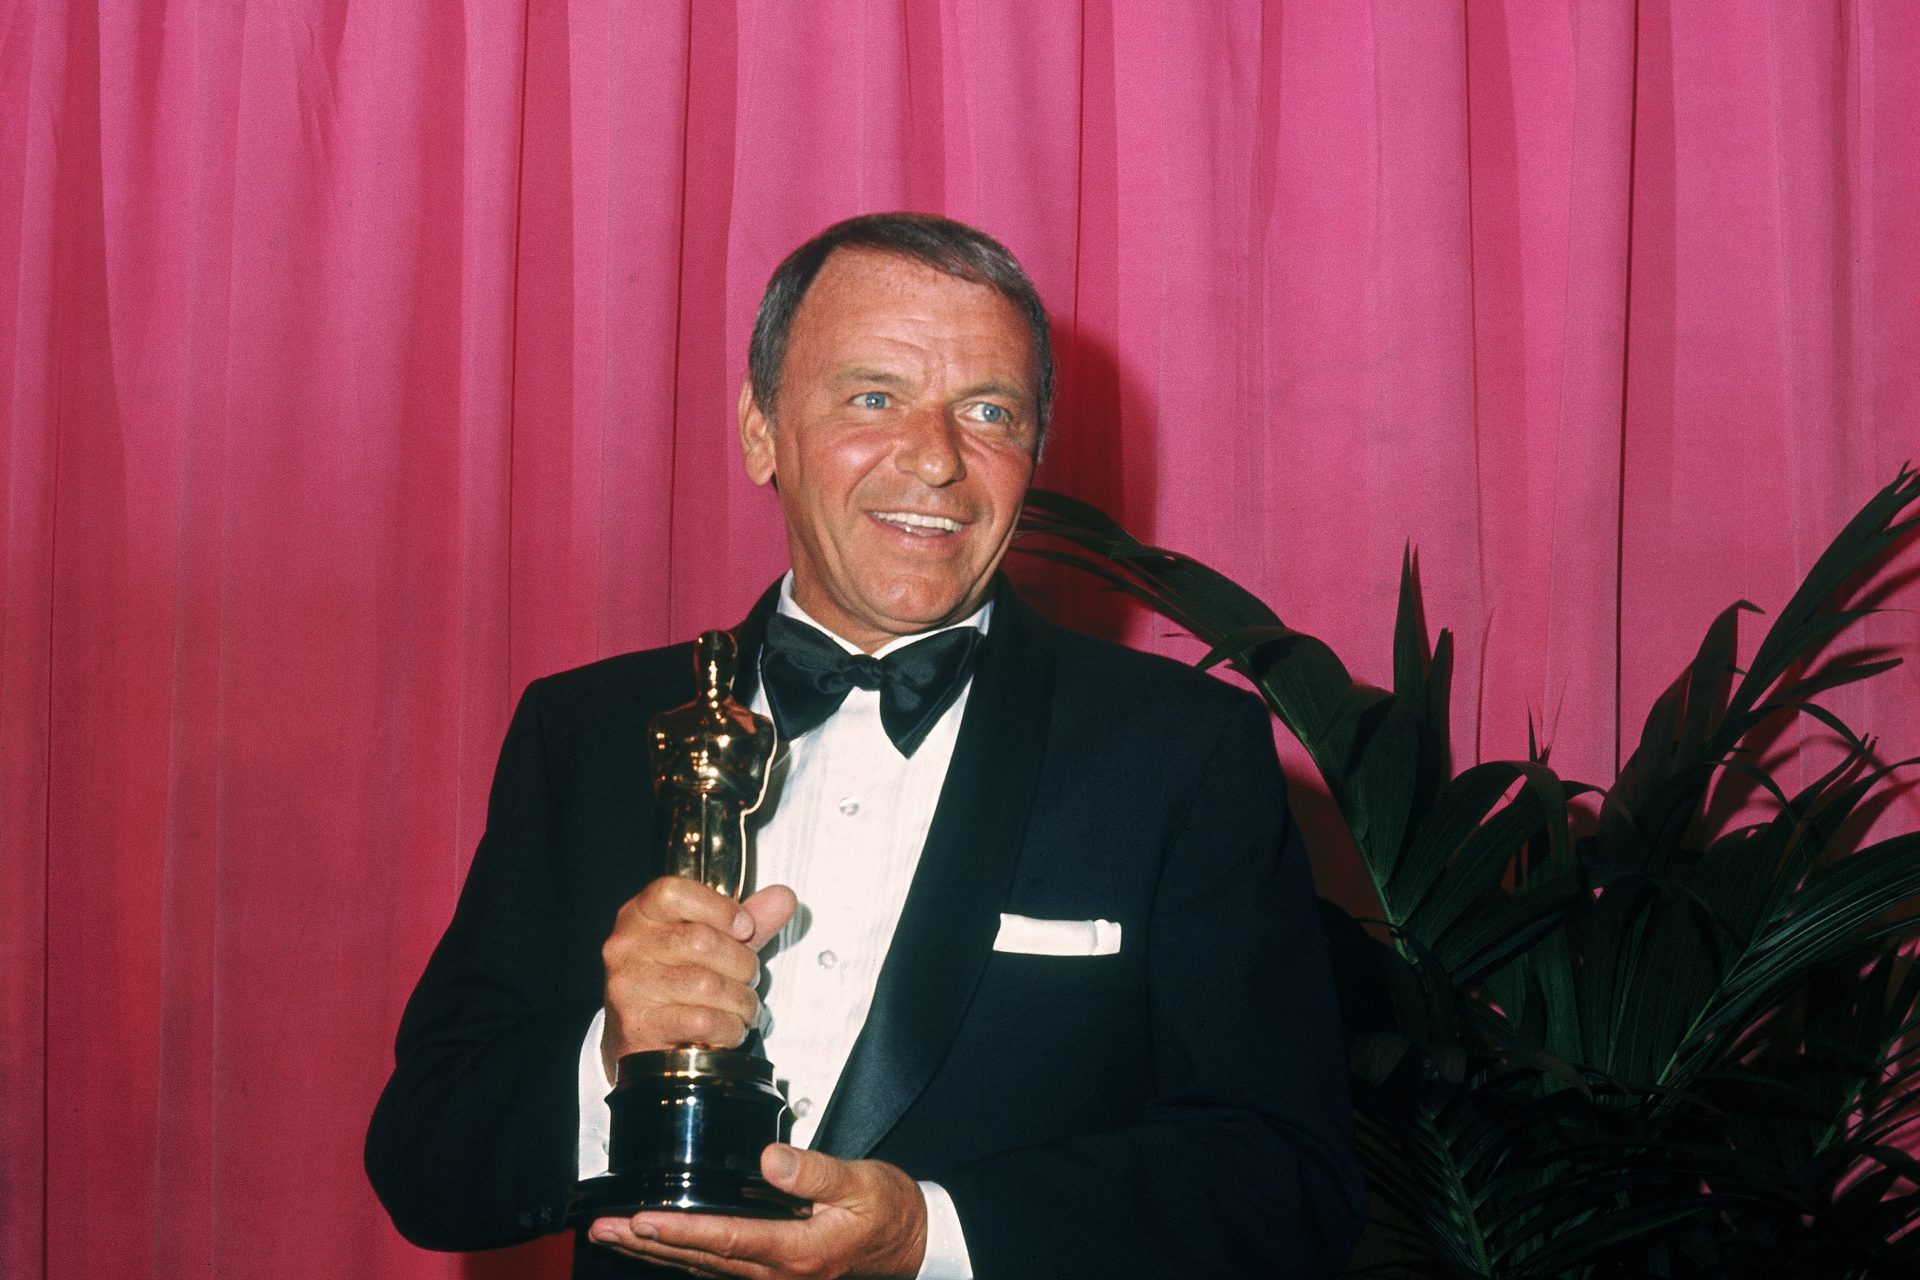 <p>Frank Sinatra, noto come "The Voice", era più di un cantante, attore e produttore; È stato anche uno degli artisti musicali più influenti del XX secolo. La sua eredità sopravvive nella musica e nella cultura popolare con successi senza tempo come "My Way" e "New York, New York". Il suo epitaffio: "Il meglio deve ancora venire"</p>